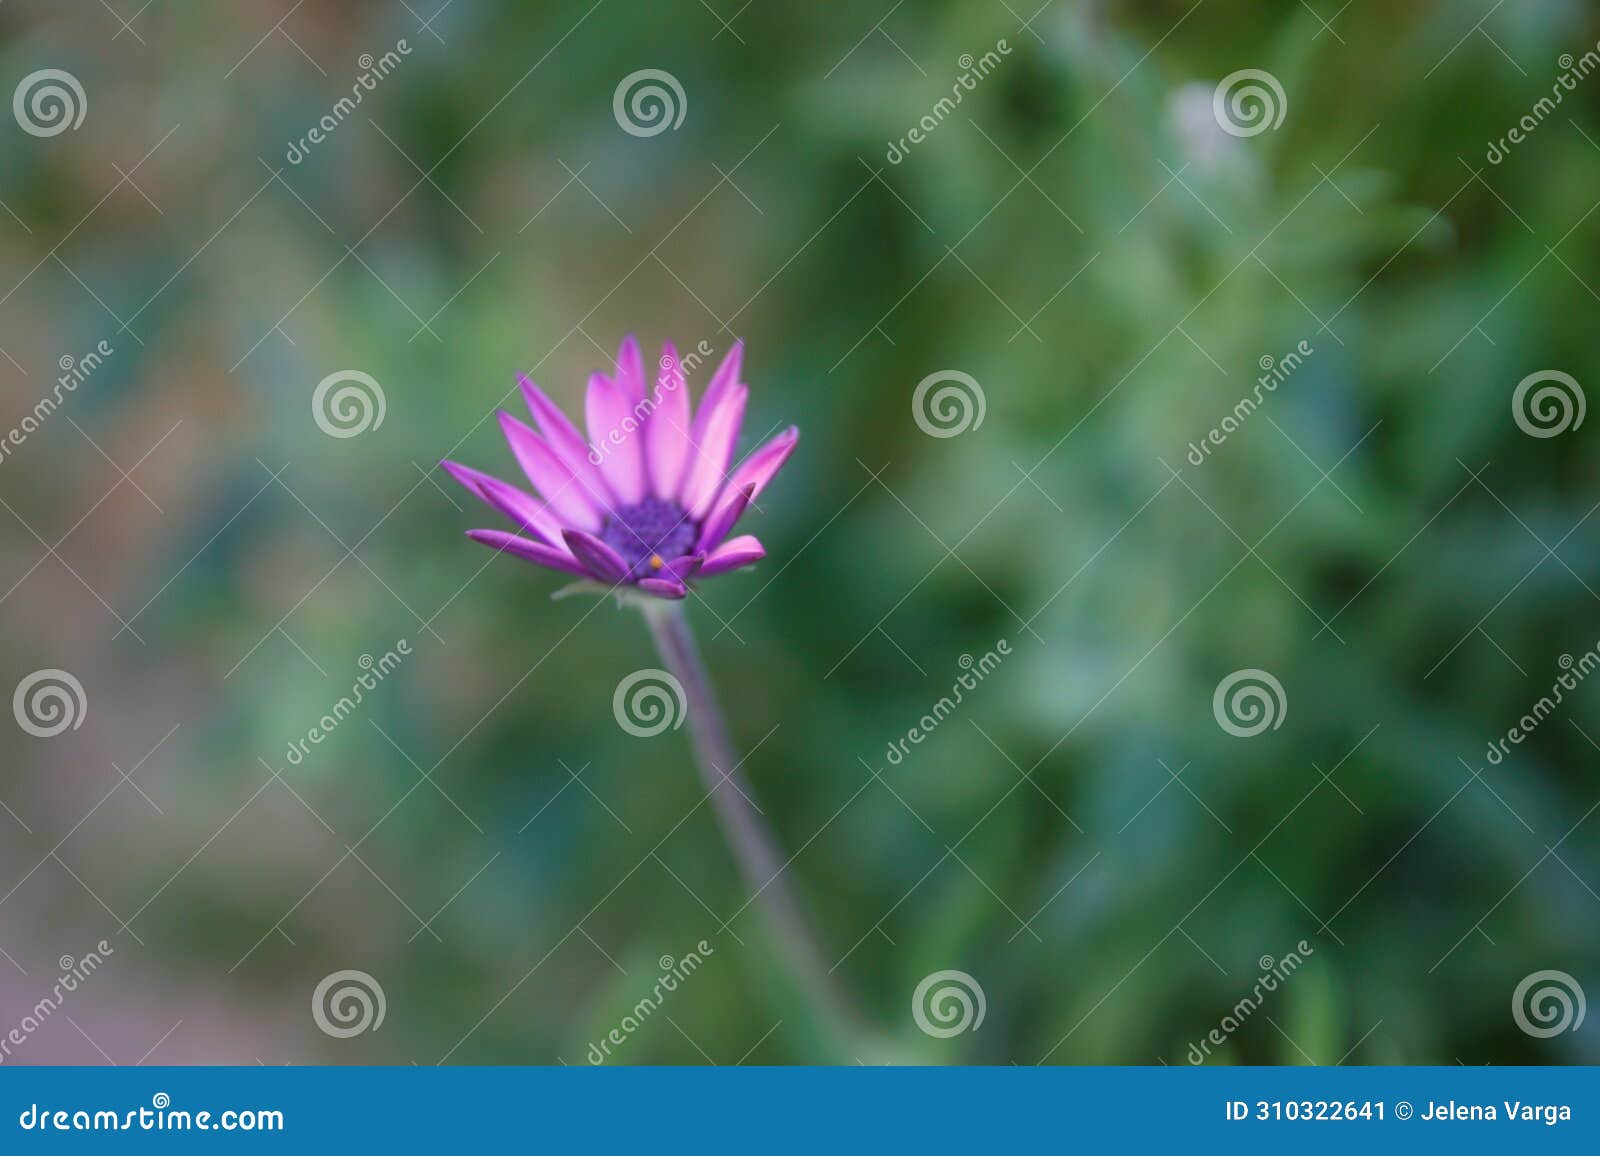 purple flower with purple polen